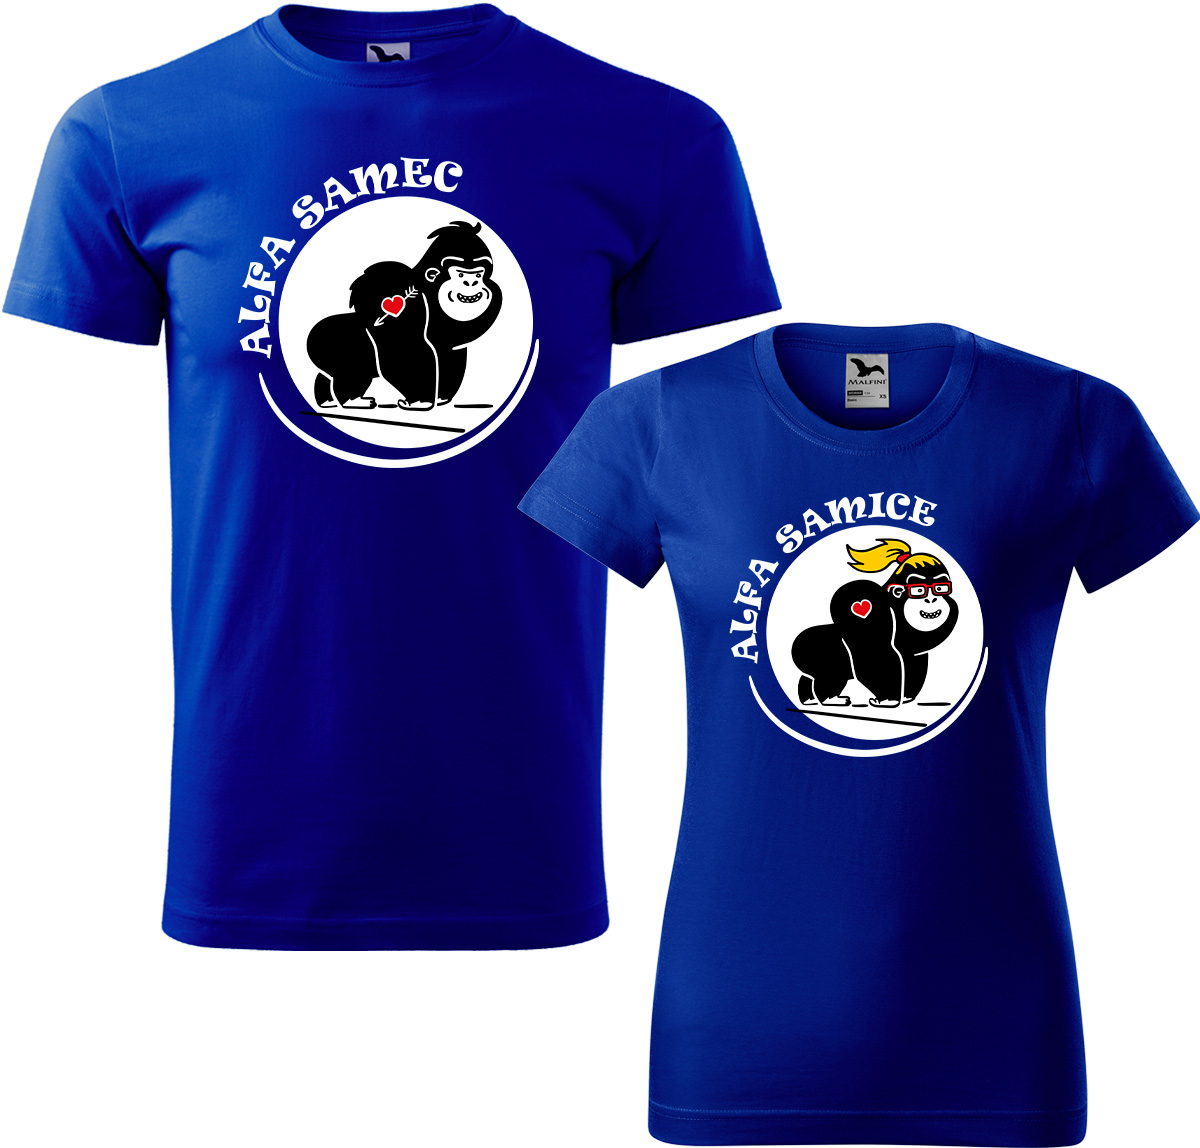 Trička pro páry - Alfa samec a alfa samice Barva: Královská modrá (05), Velikost dámské tričko: 3XL, Velikost pánské tričko: 4XL